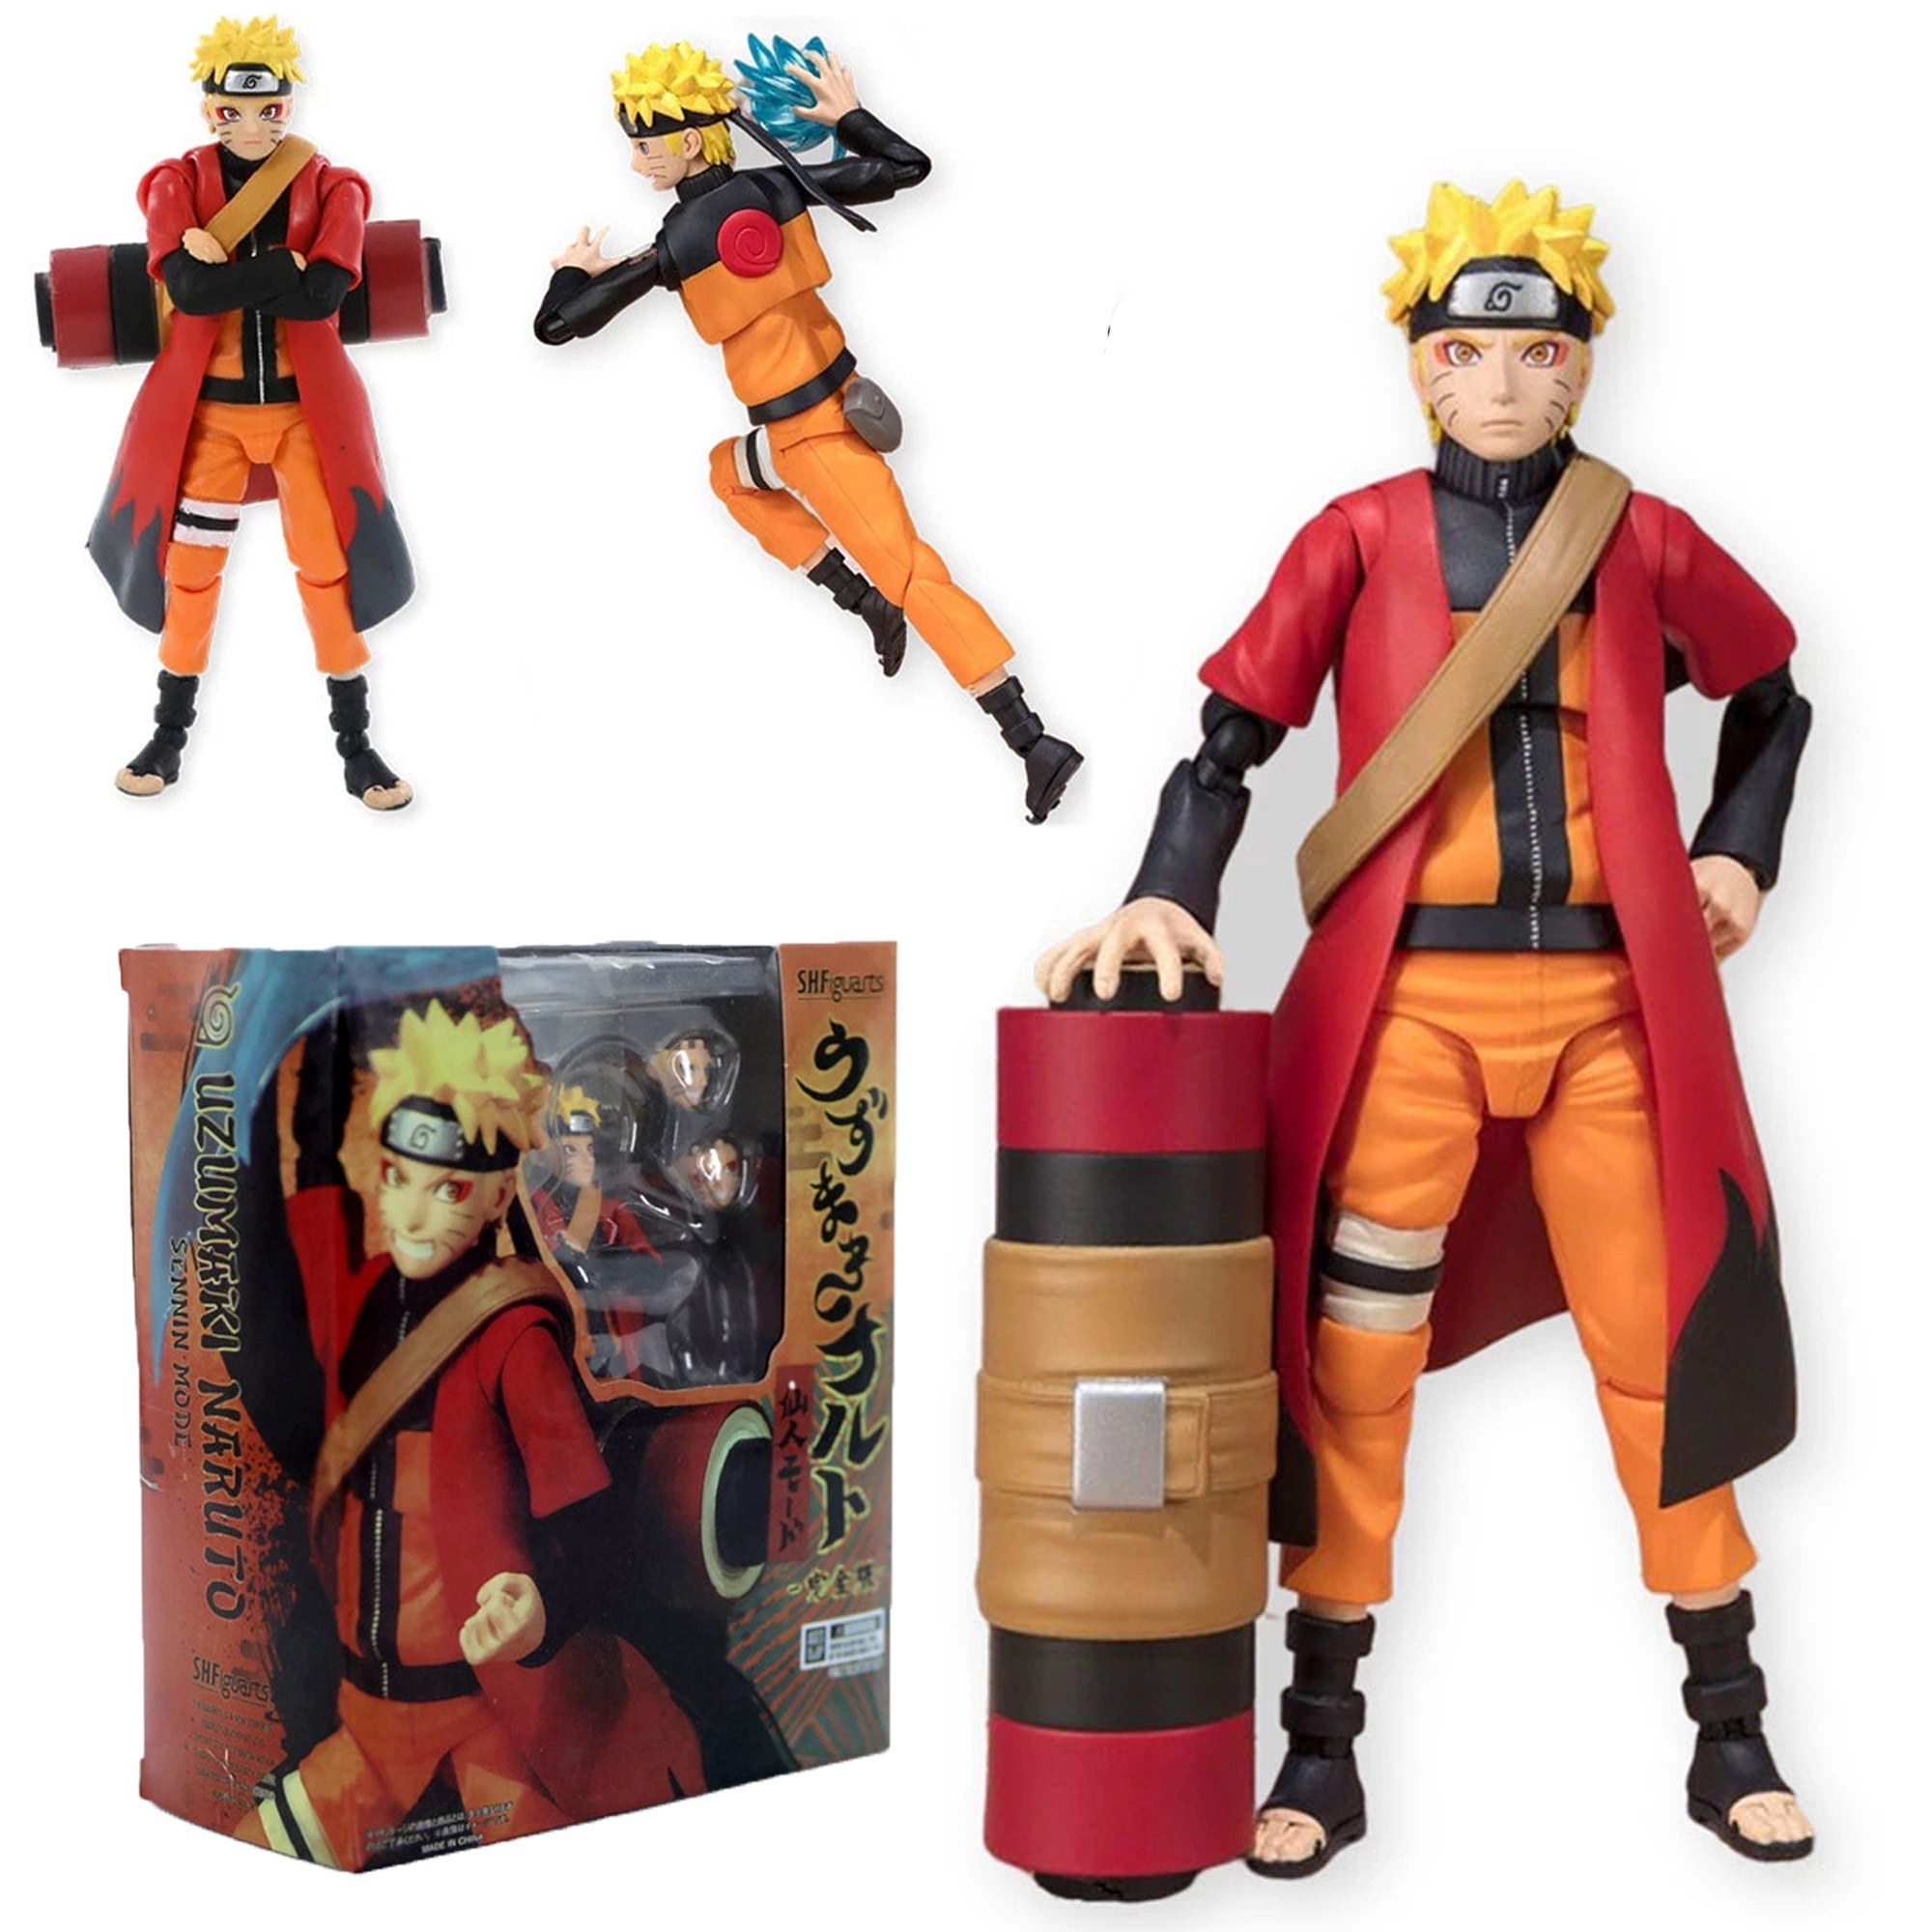 Naruto Shippuden Shf Uzumaki Rasengan Action Figure Toy 